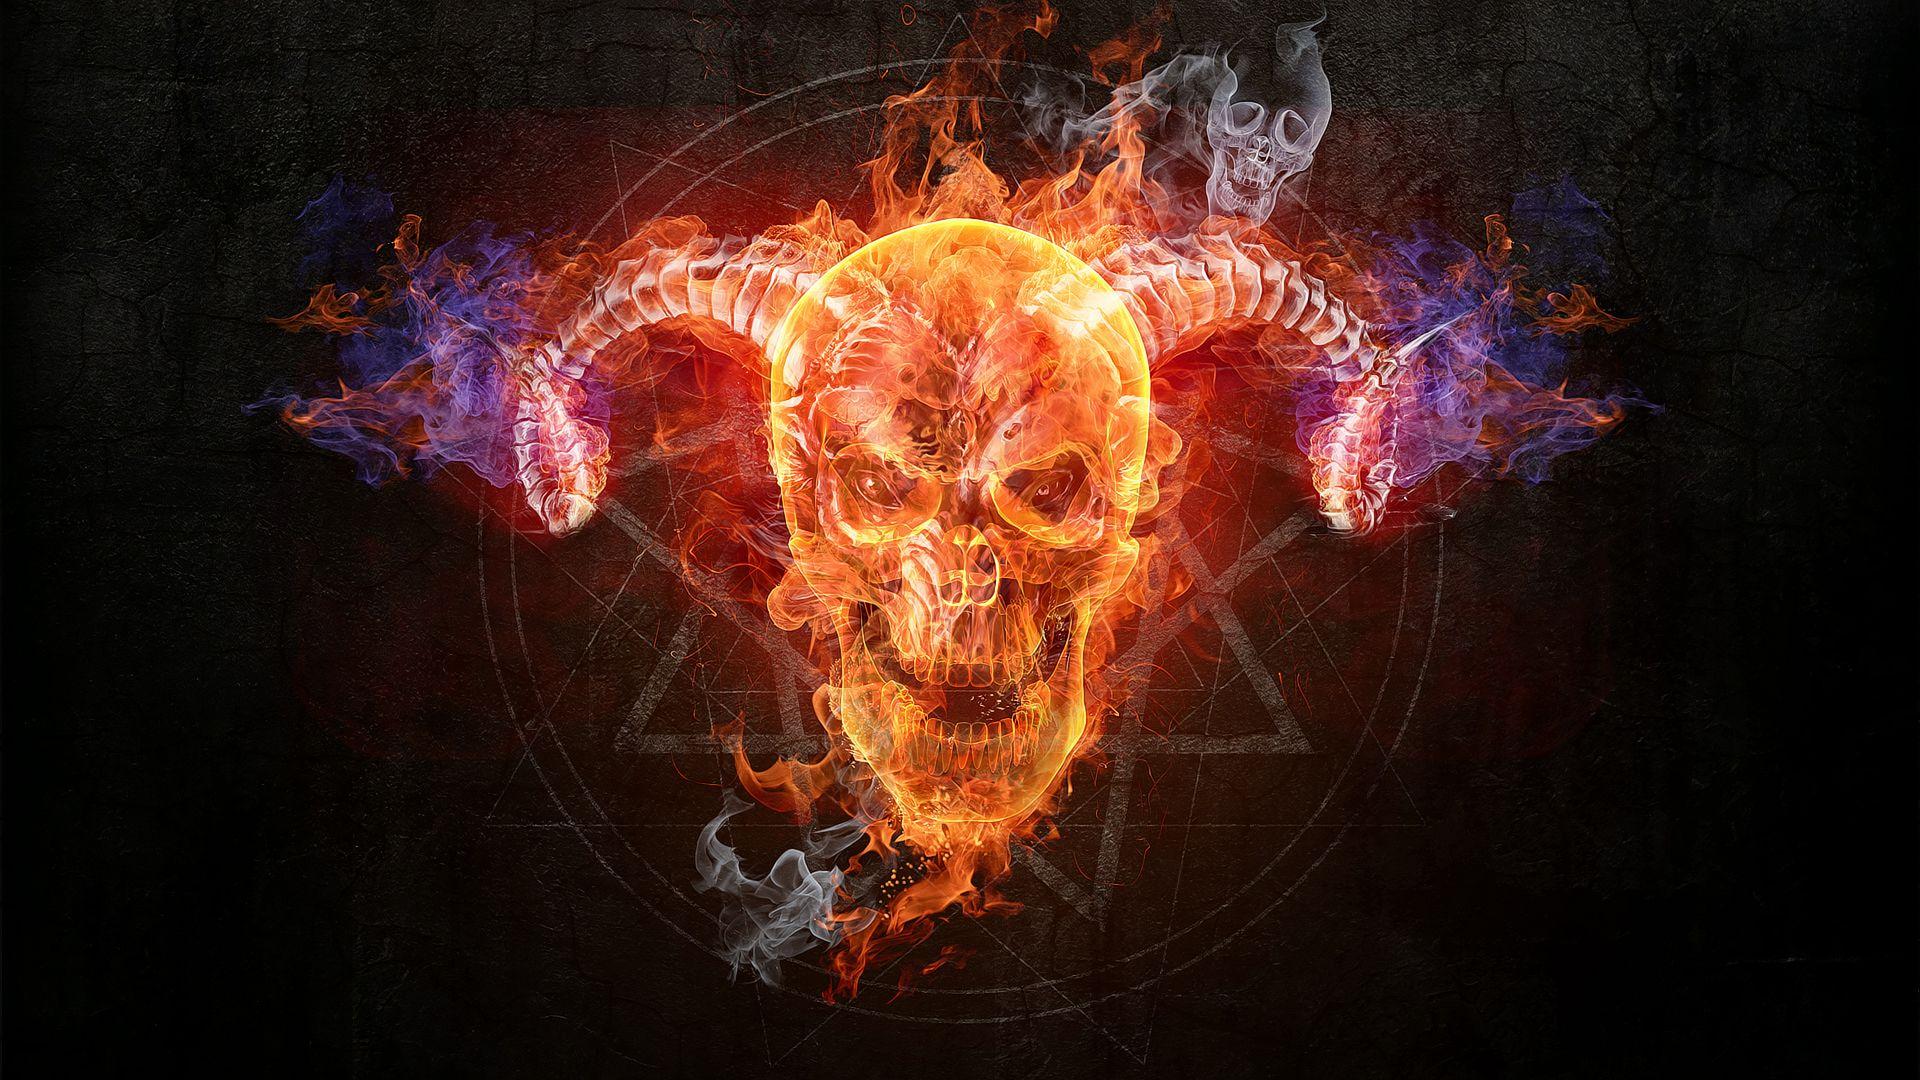 Flaming Skull wallpaper free. Skull wallpaper, Skull fire